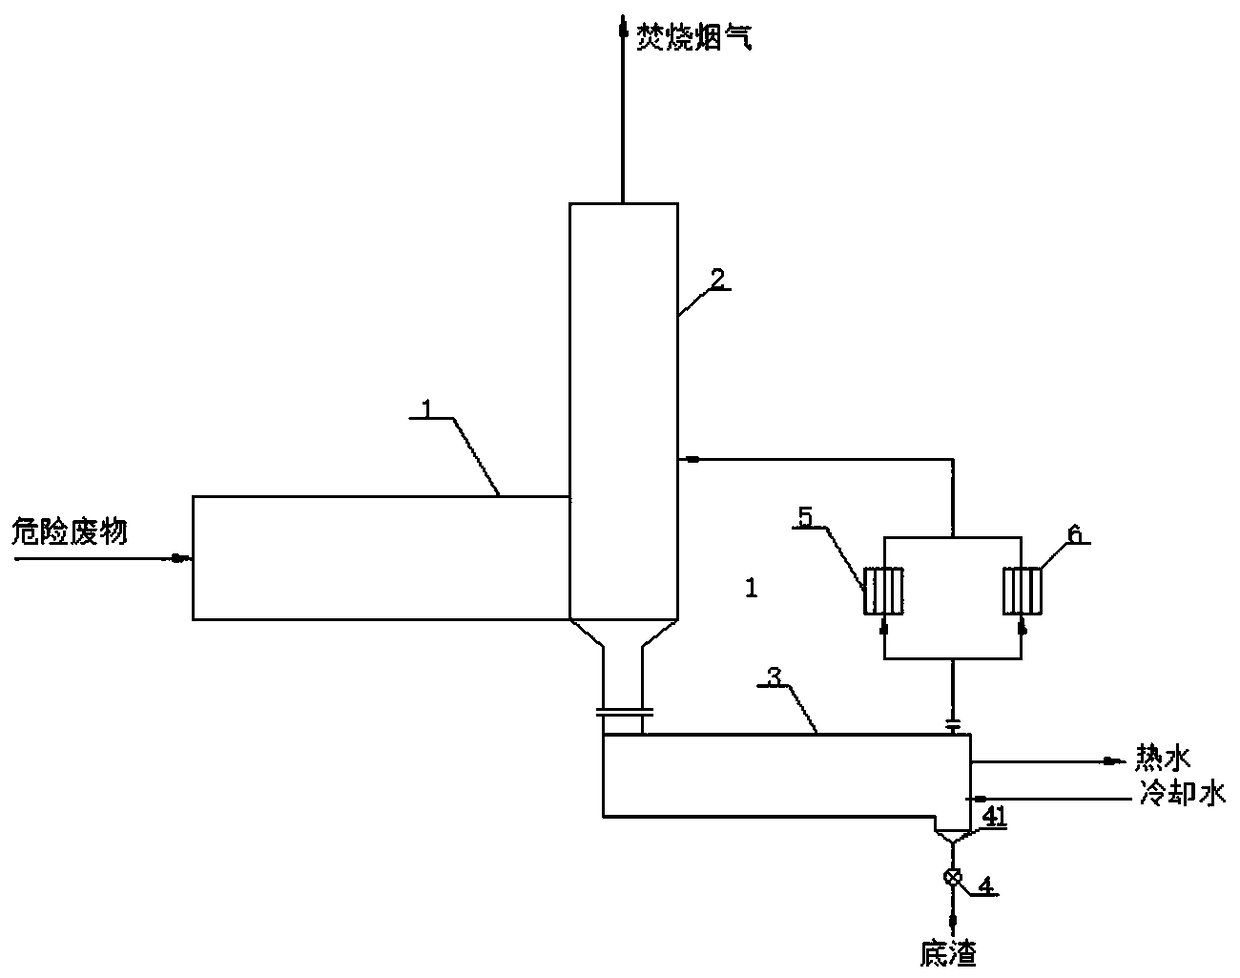 Hazardous waste incinerator with dry cooling slag discharging mechanism